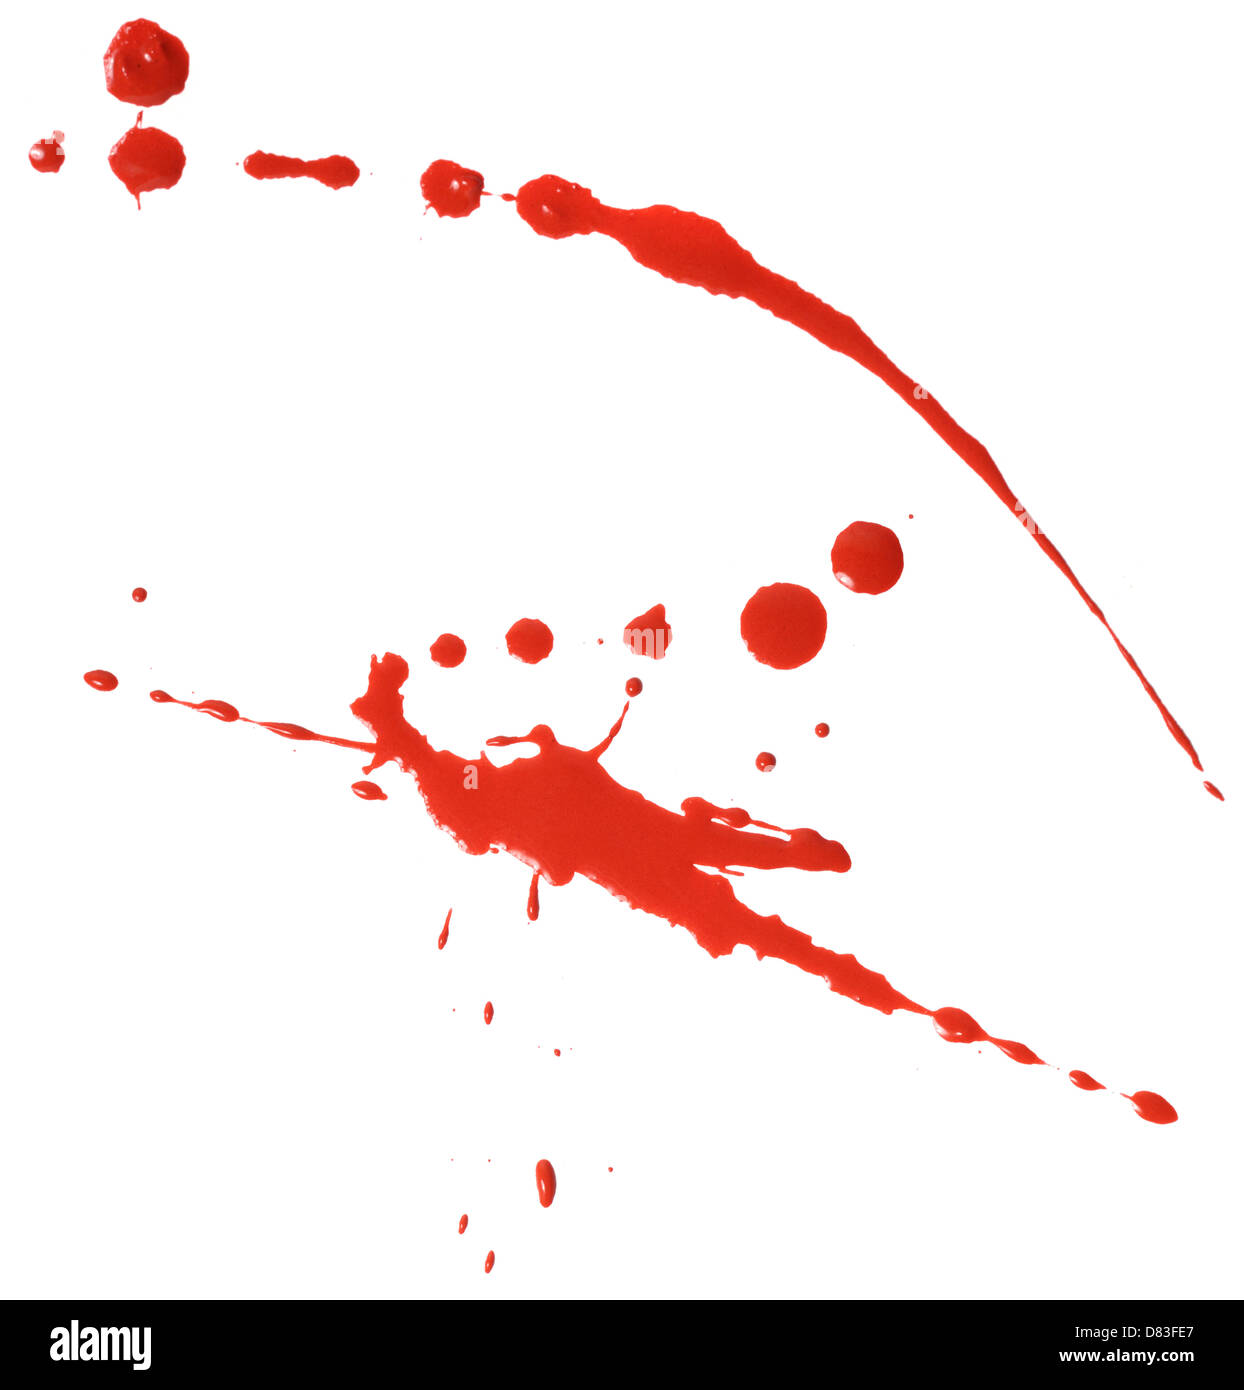 Abstract stock photo de coulures de peinture rouge sur fond blanc de toile texture Banque D'Images